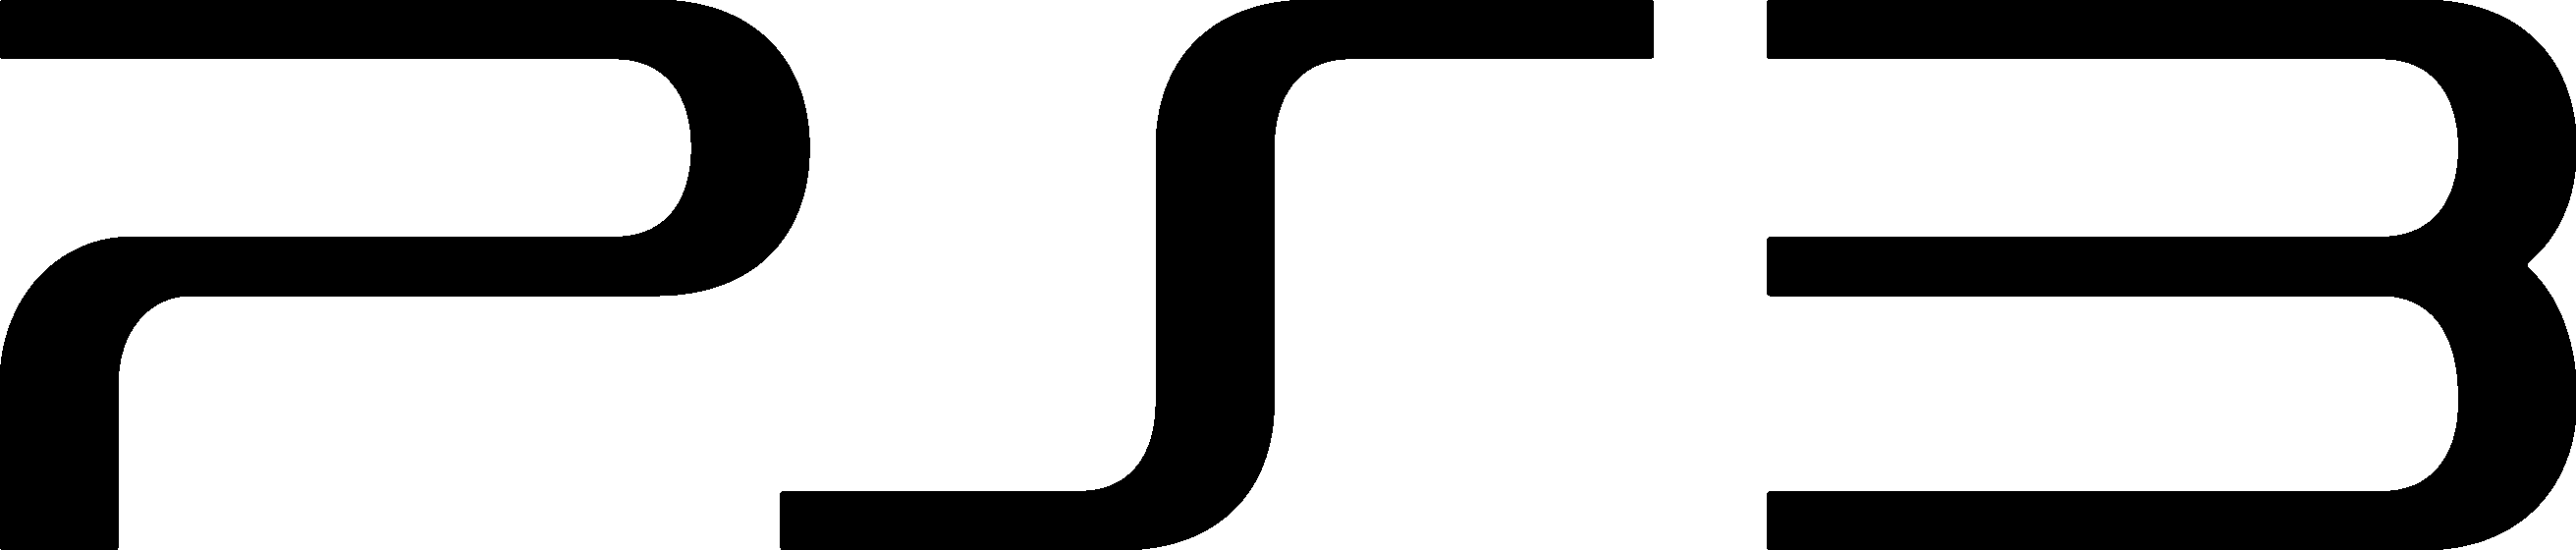 PS3 Logo   PlayStation 3 png